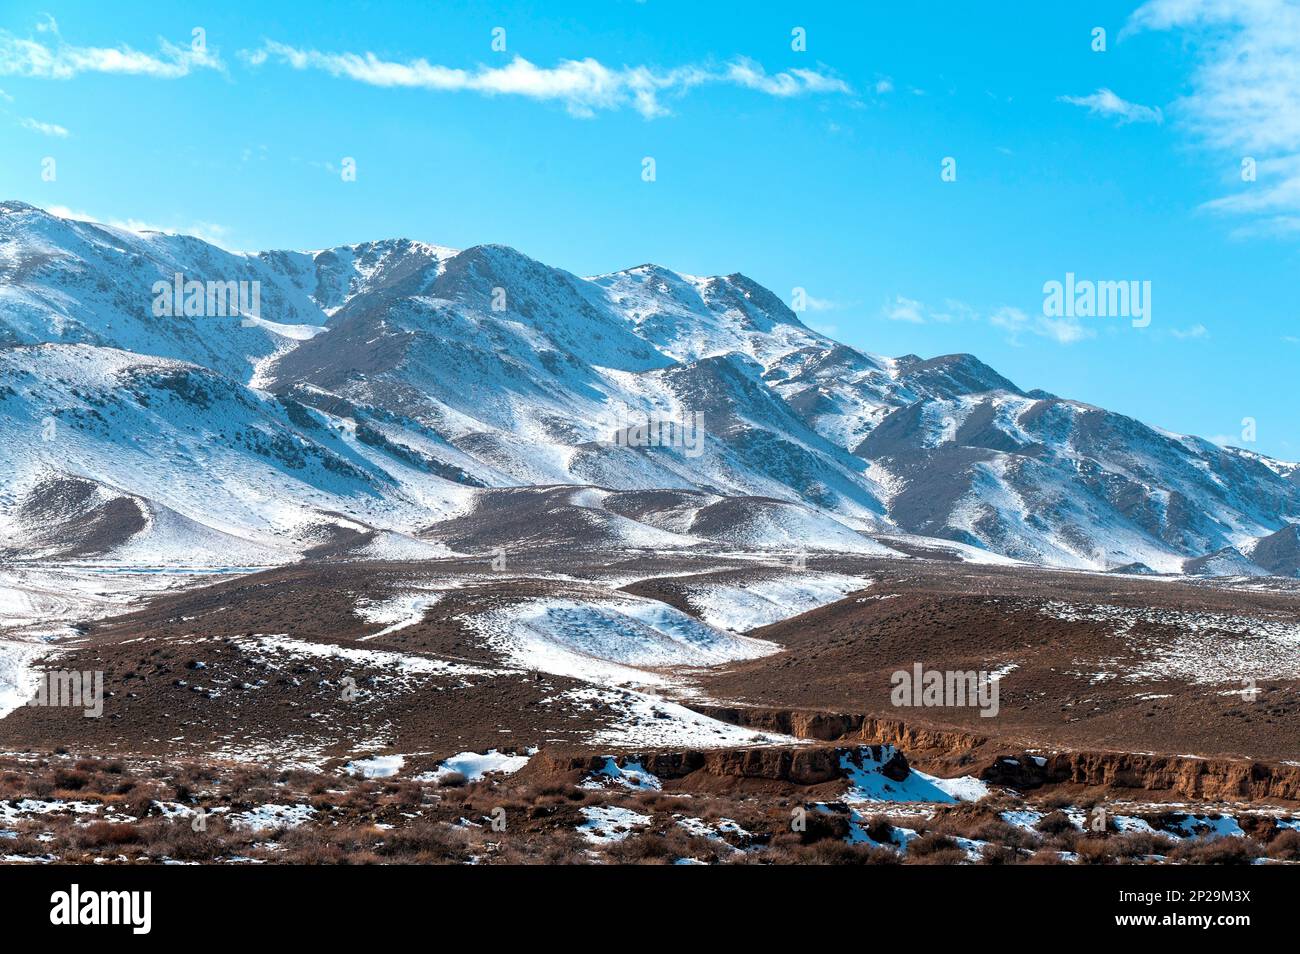 Vista panoramica delle colline intorno al Tian Shan o Tengri Tagh. Tian Shan è un grande sistema di catene montuose situato in Asia centrale. Foto Stock